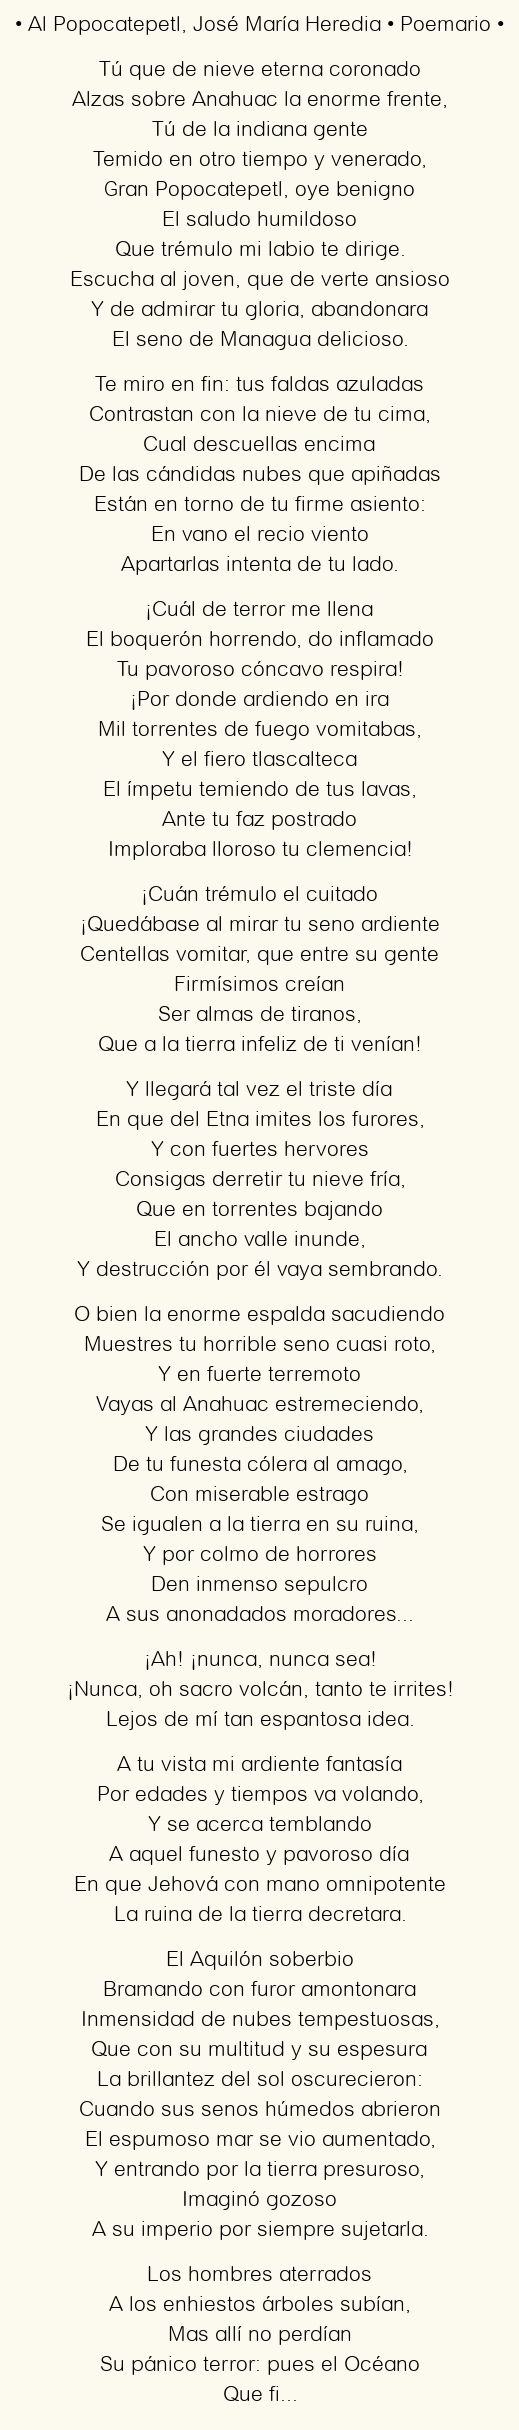 Al Popocatepetl, por José María Heredia